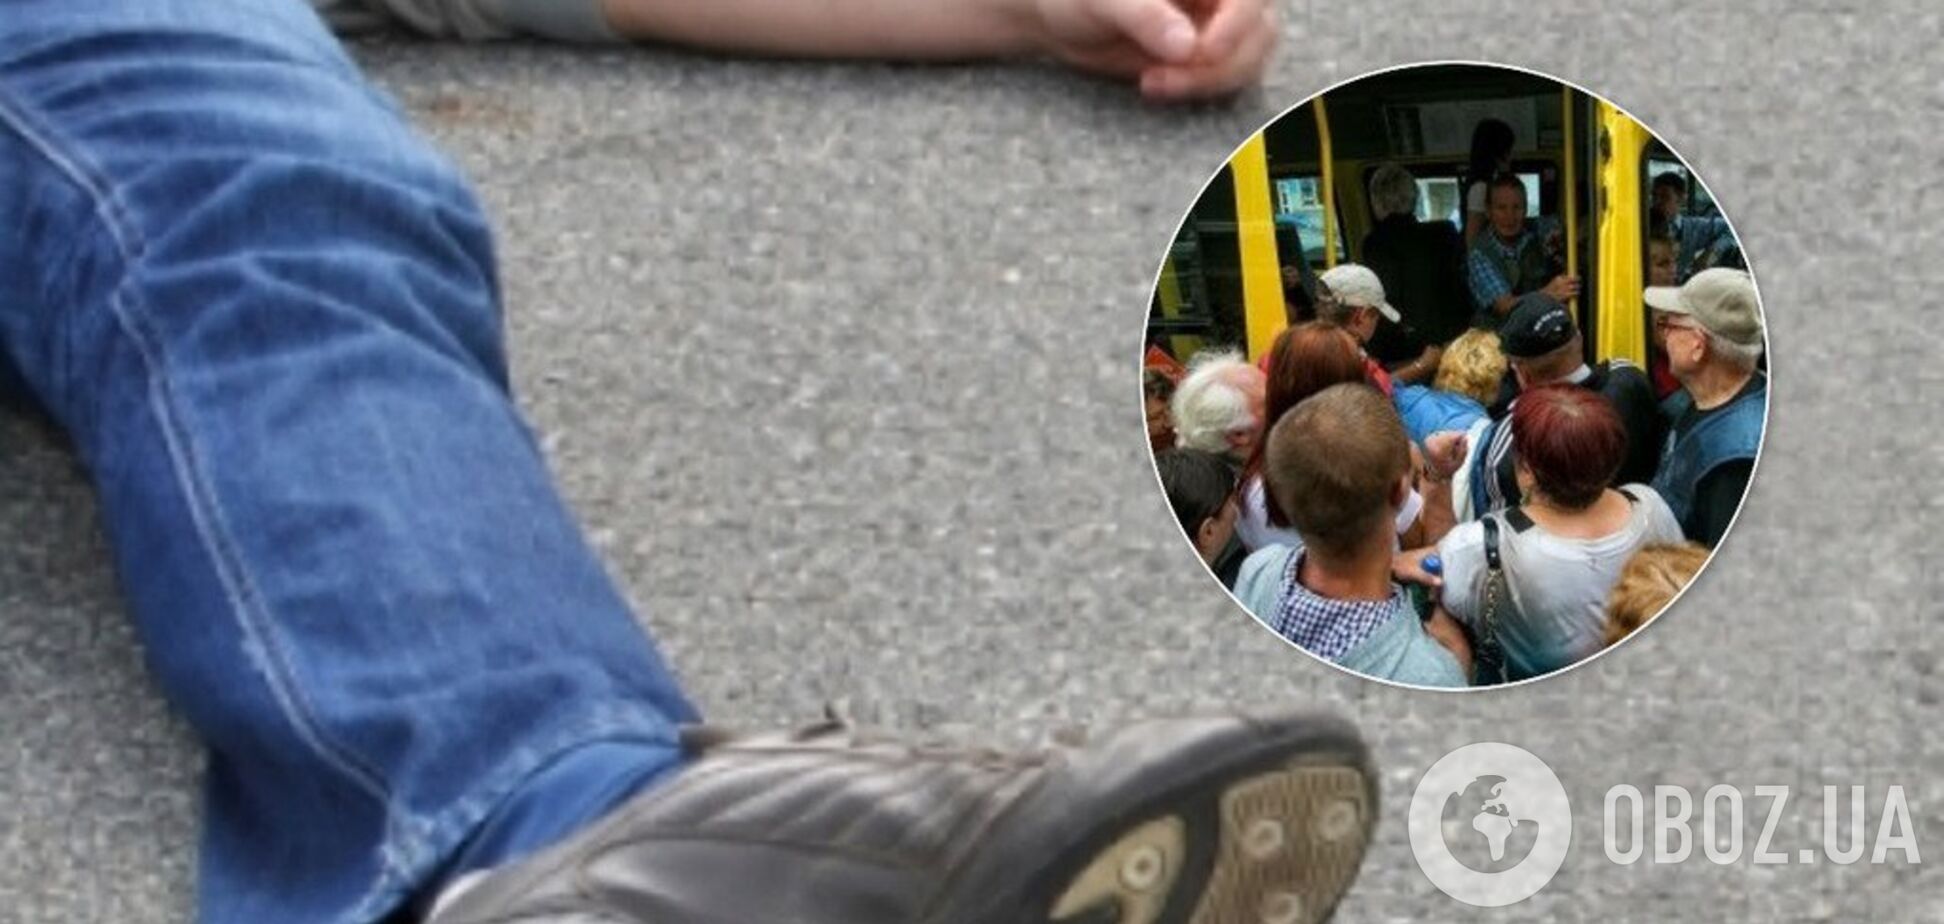 Разбил голову об асфальт: в Кривом Роге пассажир выпал из переполненной маршрутки